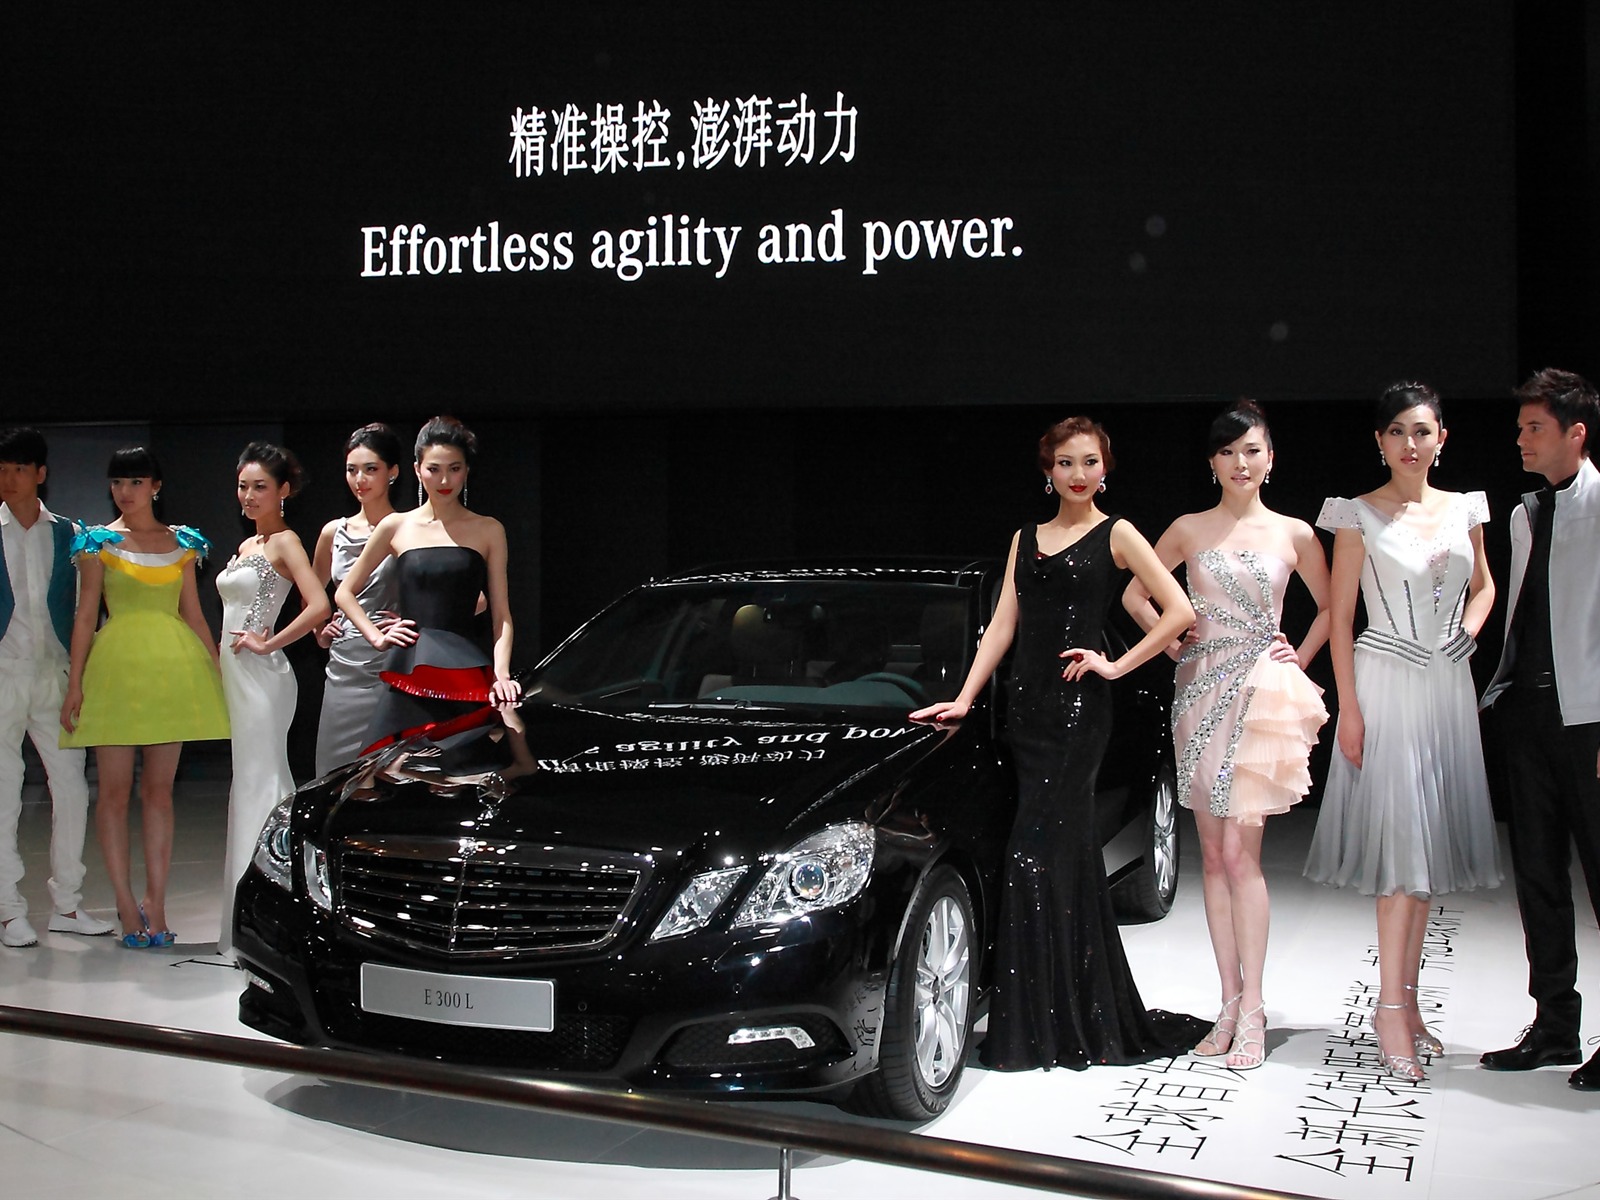 2010北京国际车展 (兜兜里的糖作品)15 - 1600x1200